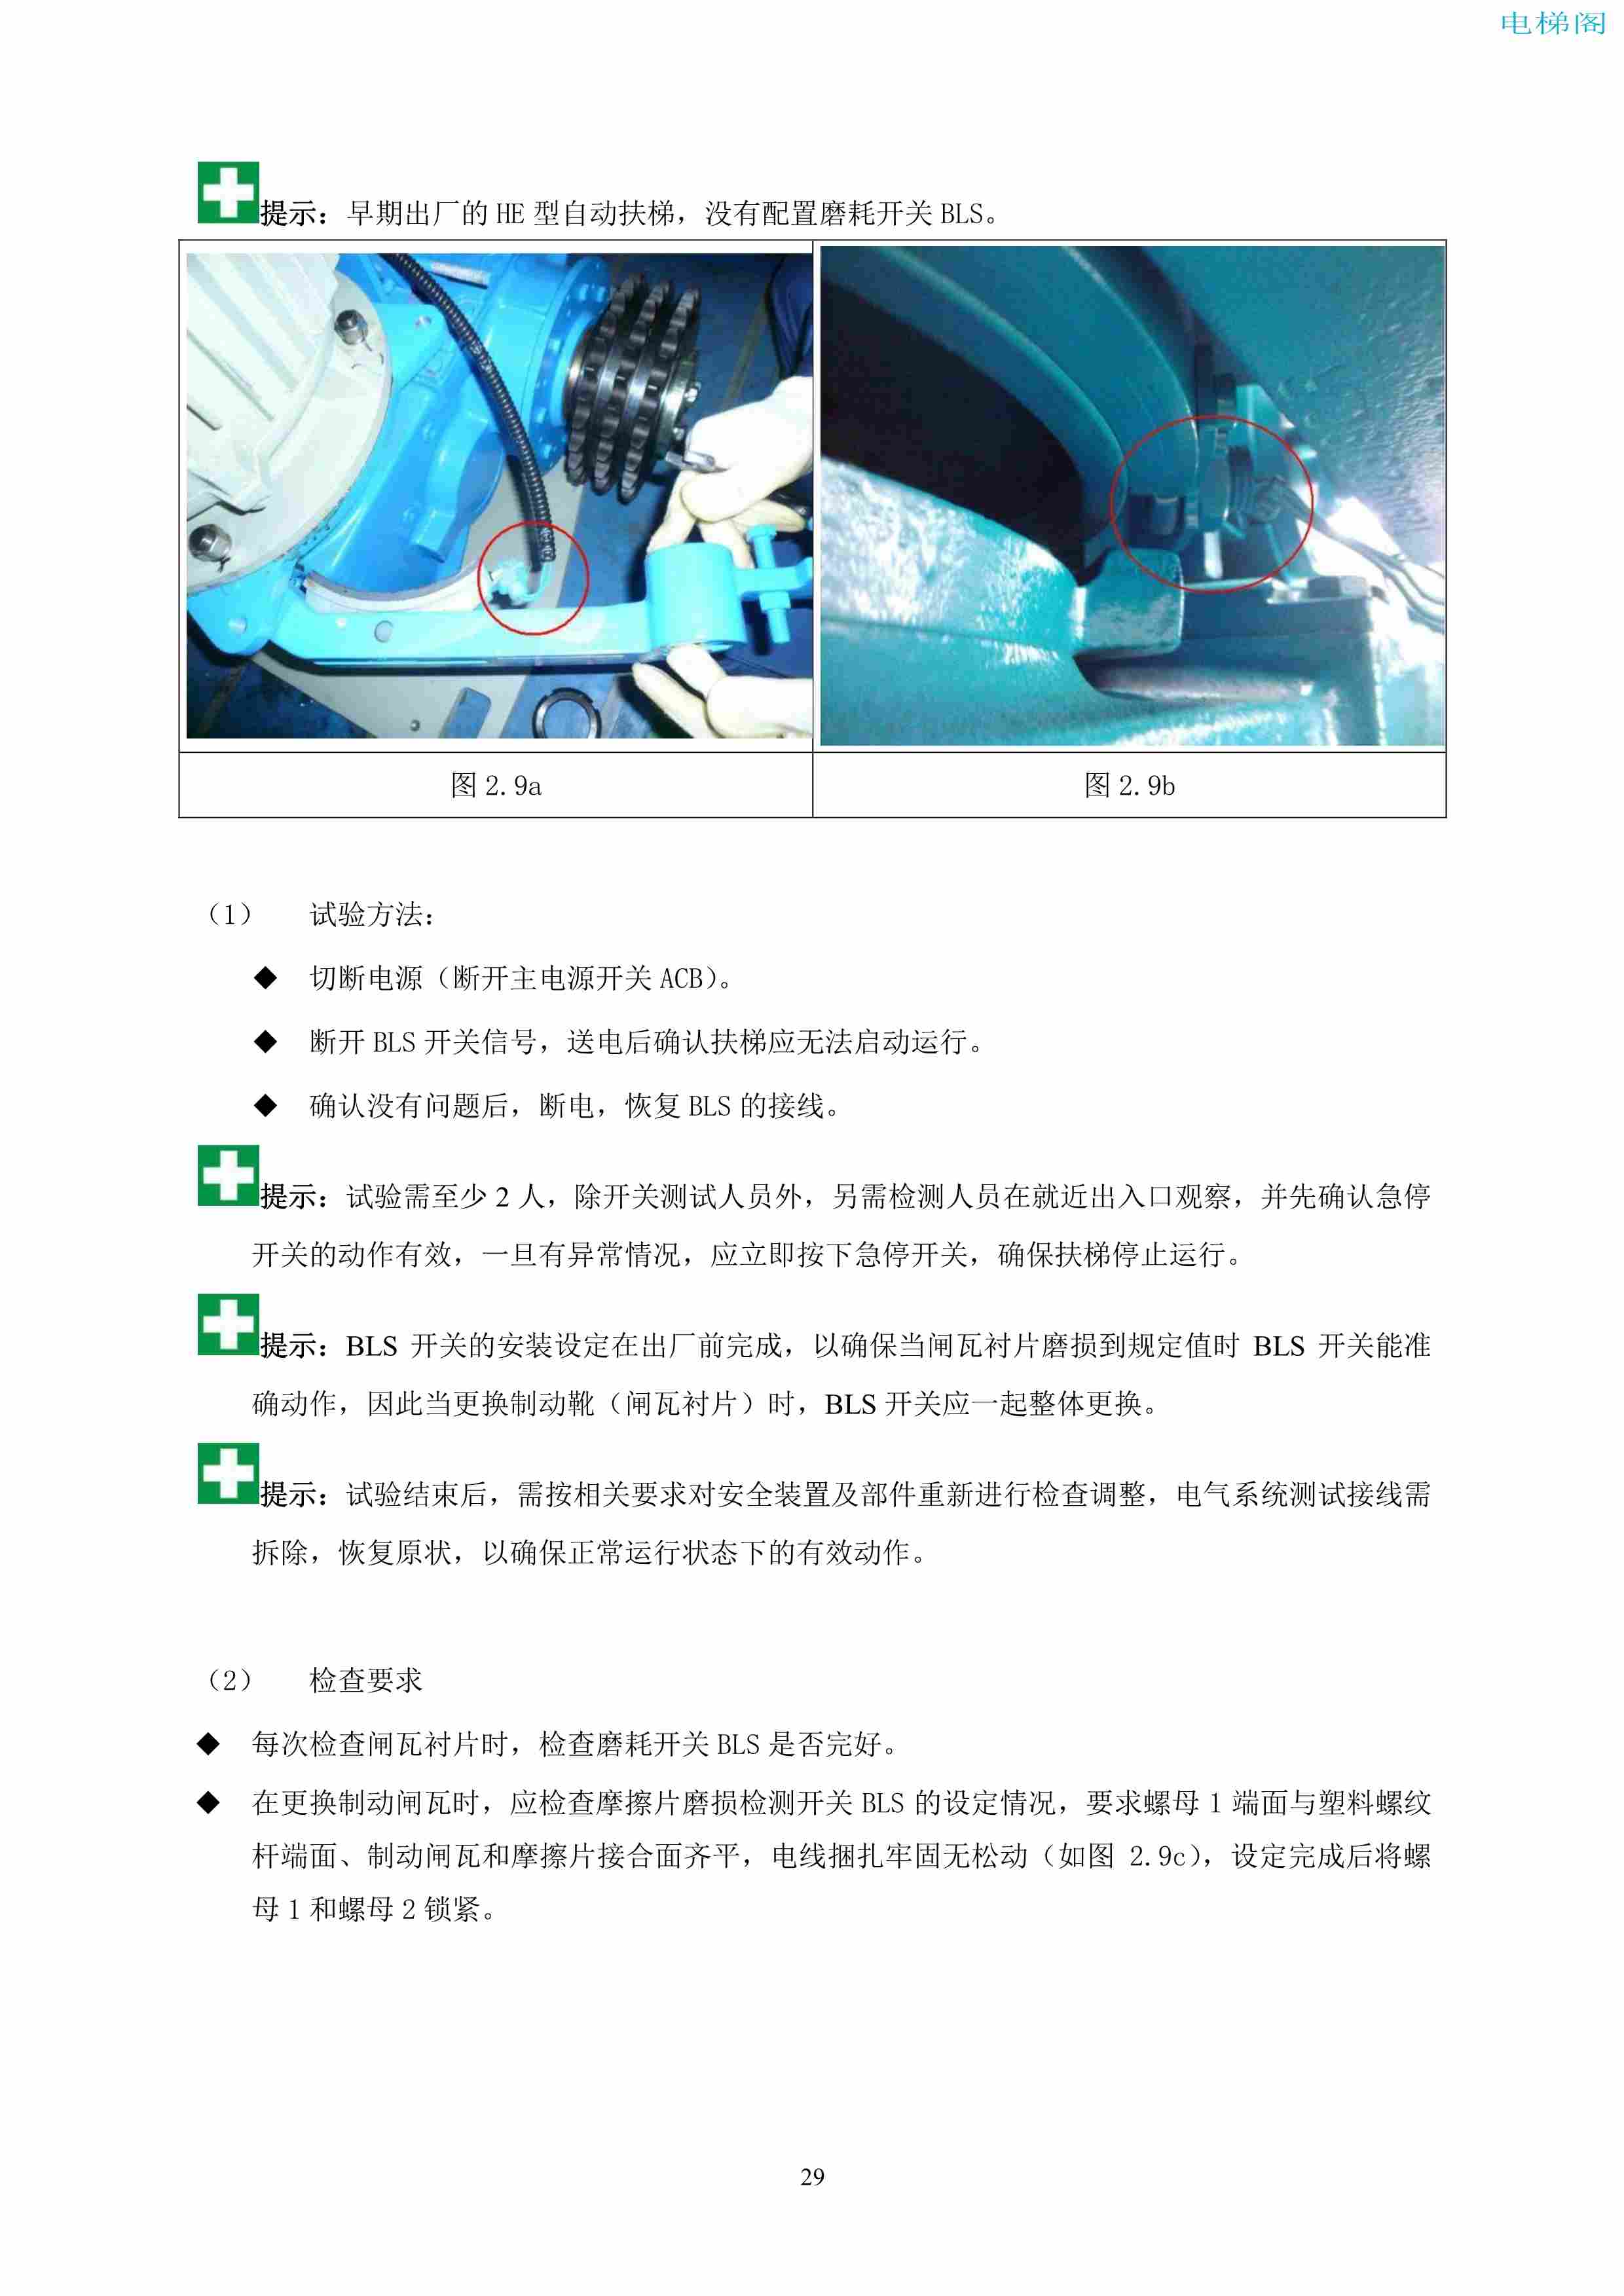 上海三菱电梯有限公司自动扶梯制动器维护作业要领汇编_30.jpg